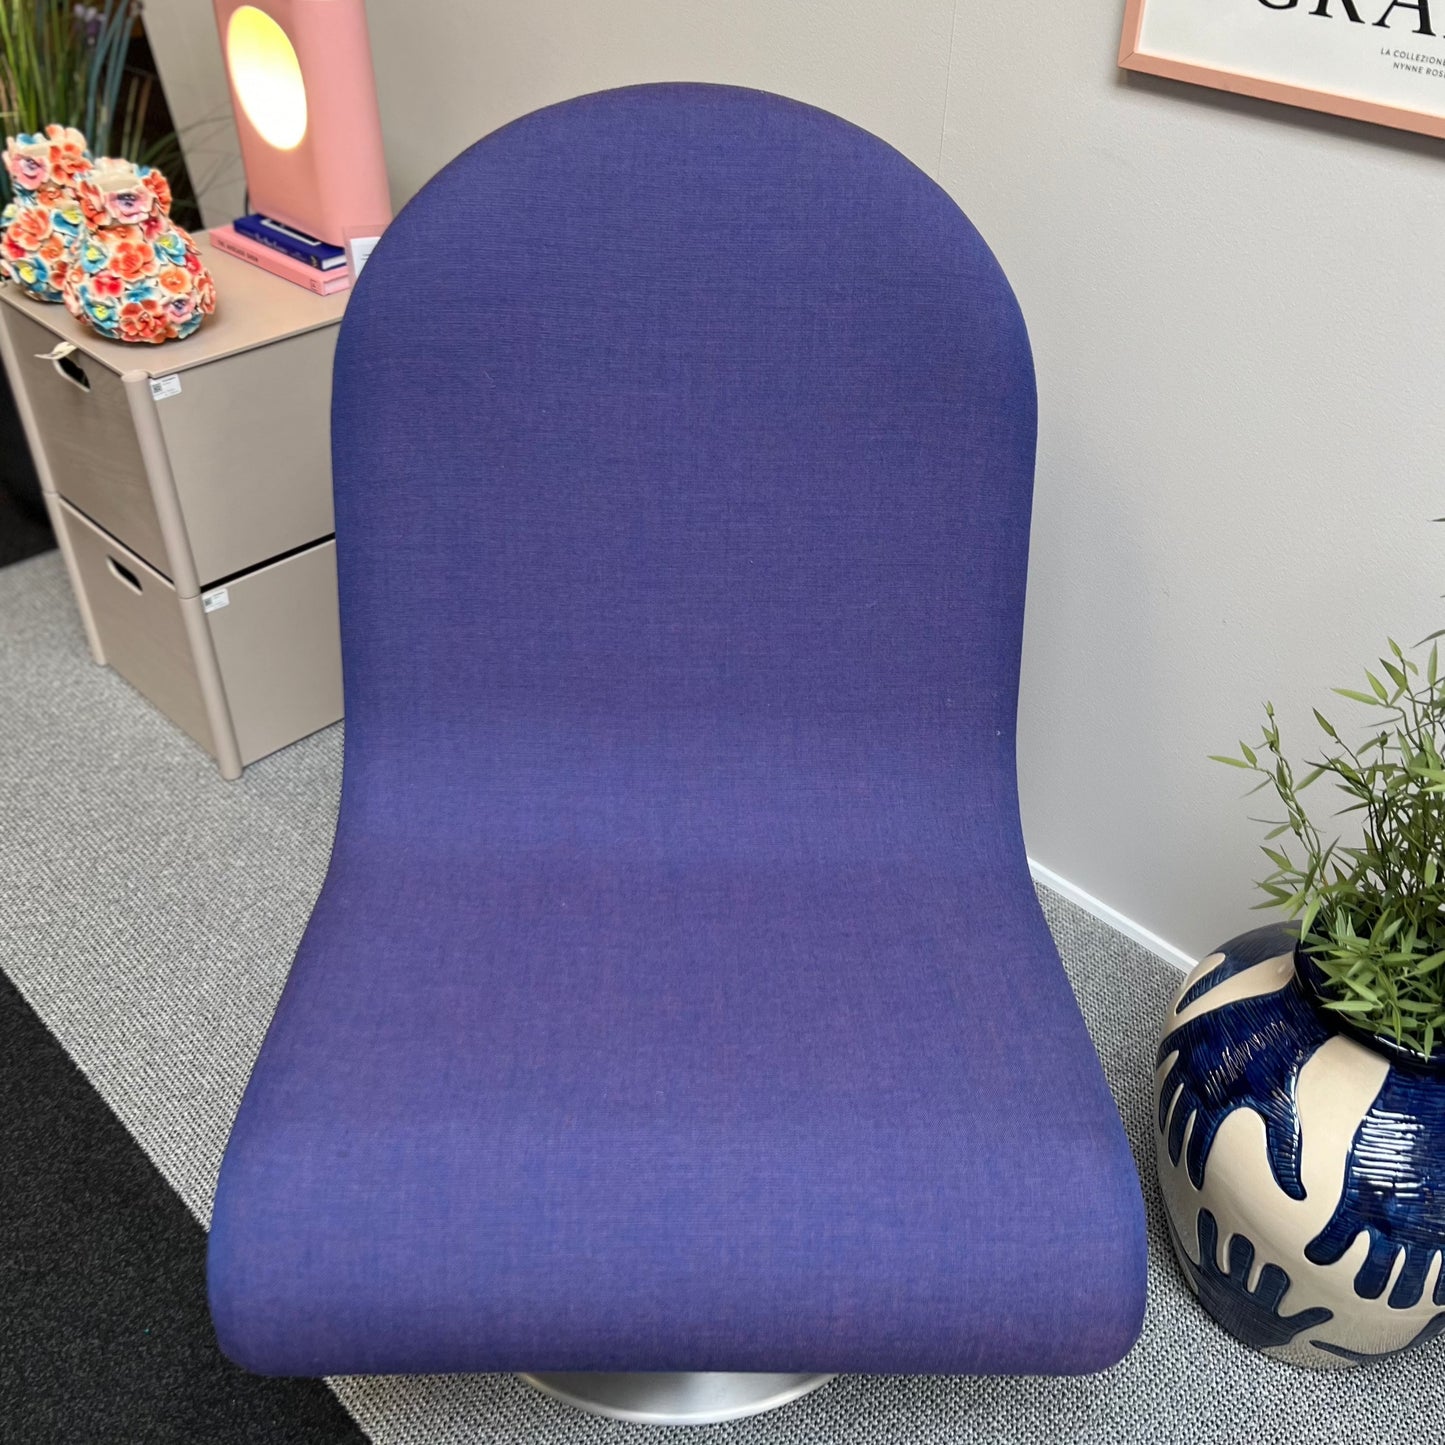 Verpan | System 1-2-3 Lounge Chair - udstillingsmodel